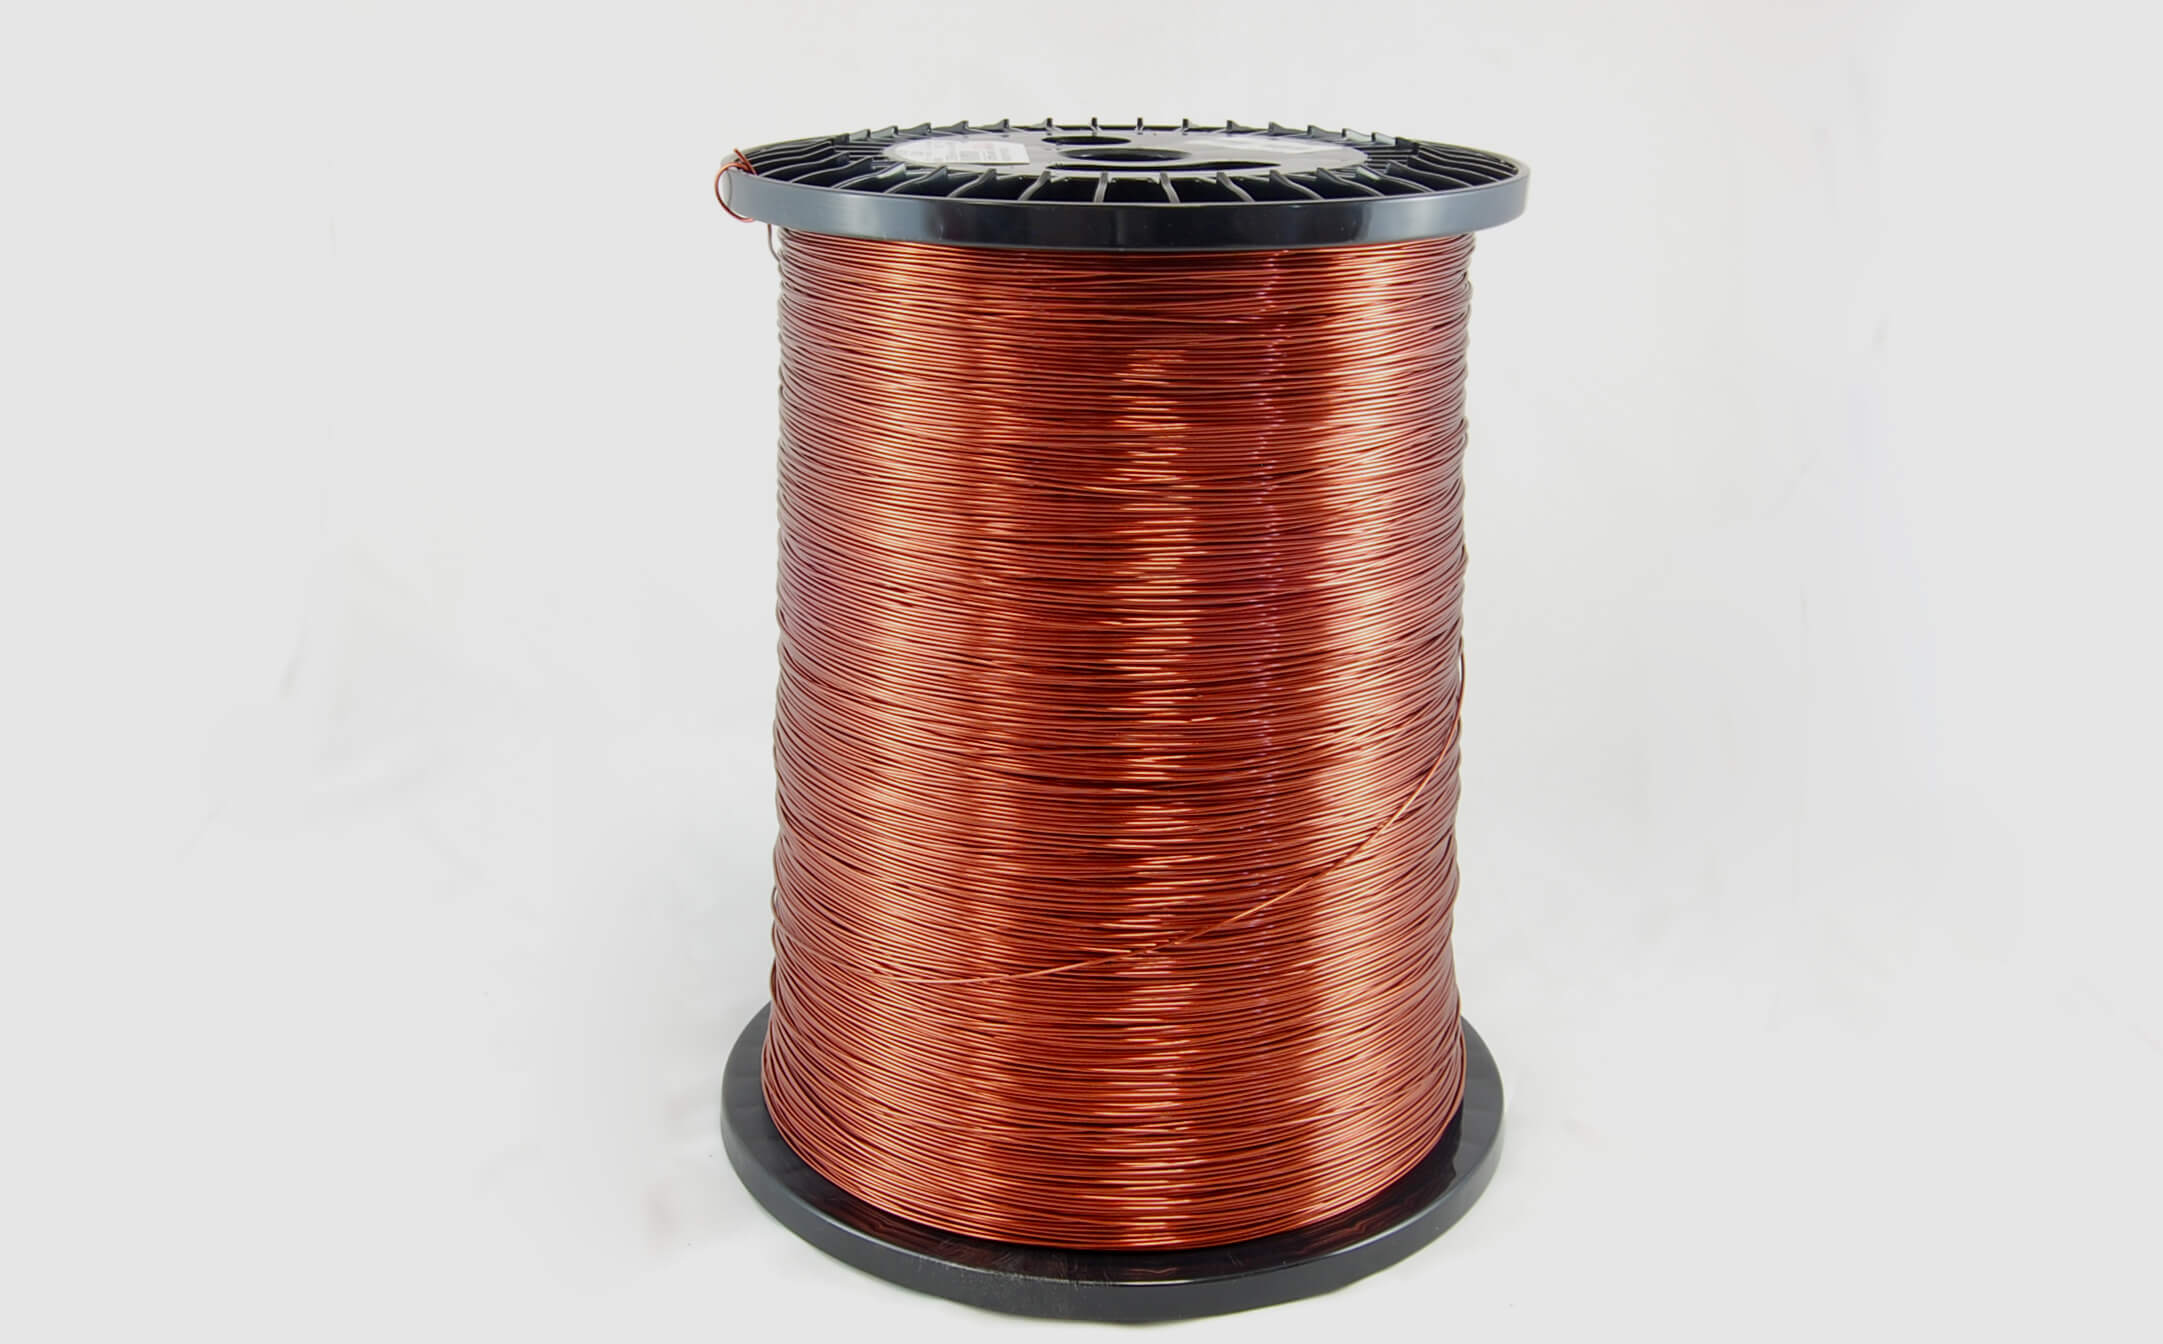 #15 Heavy Super Hyslik 200 Round HTAIH MW 35 Copper Magnet Wire 200°C, copper, 85 LB pail (average wght.)